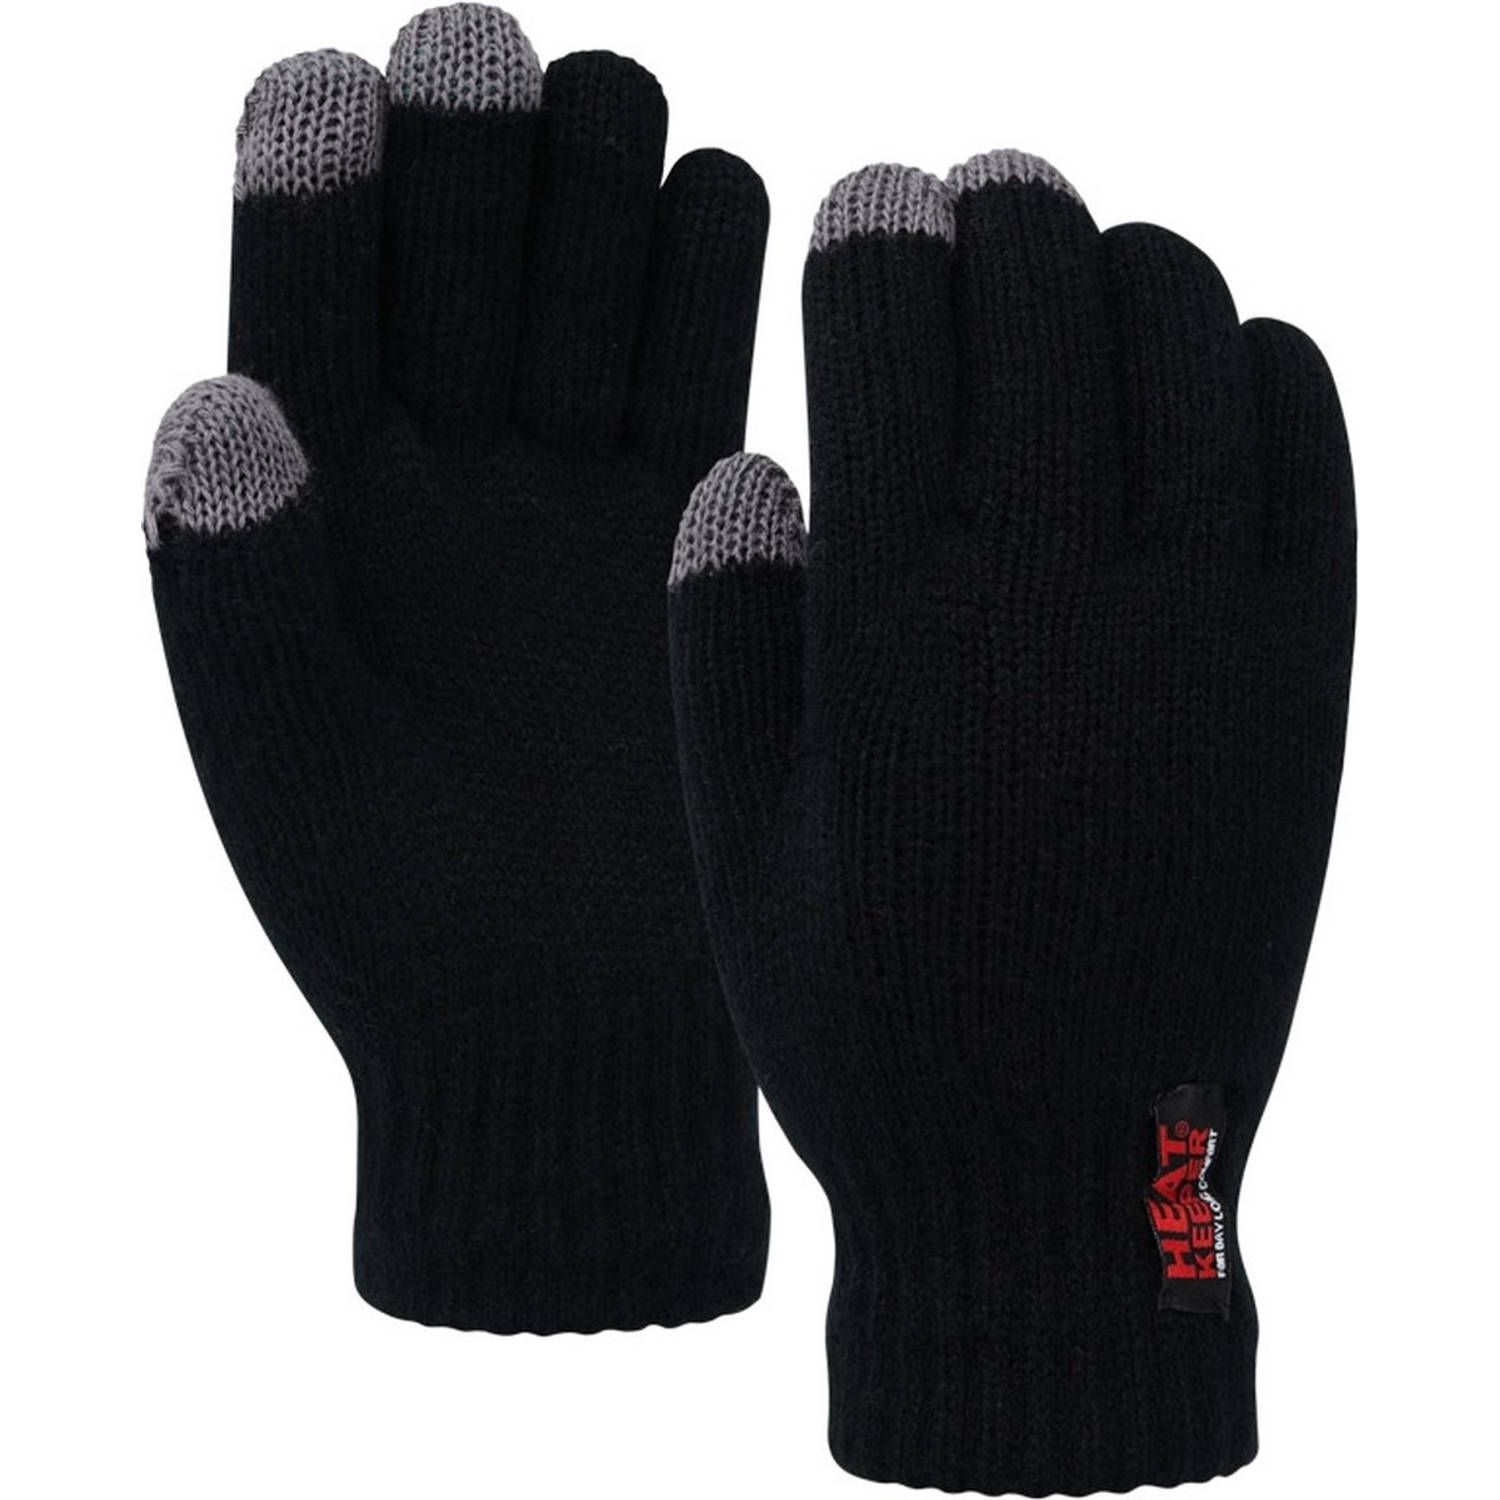 Heat Keeper Thermo Handschoenen - Kleur Zwart - I-touch - Maat L/xl